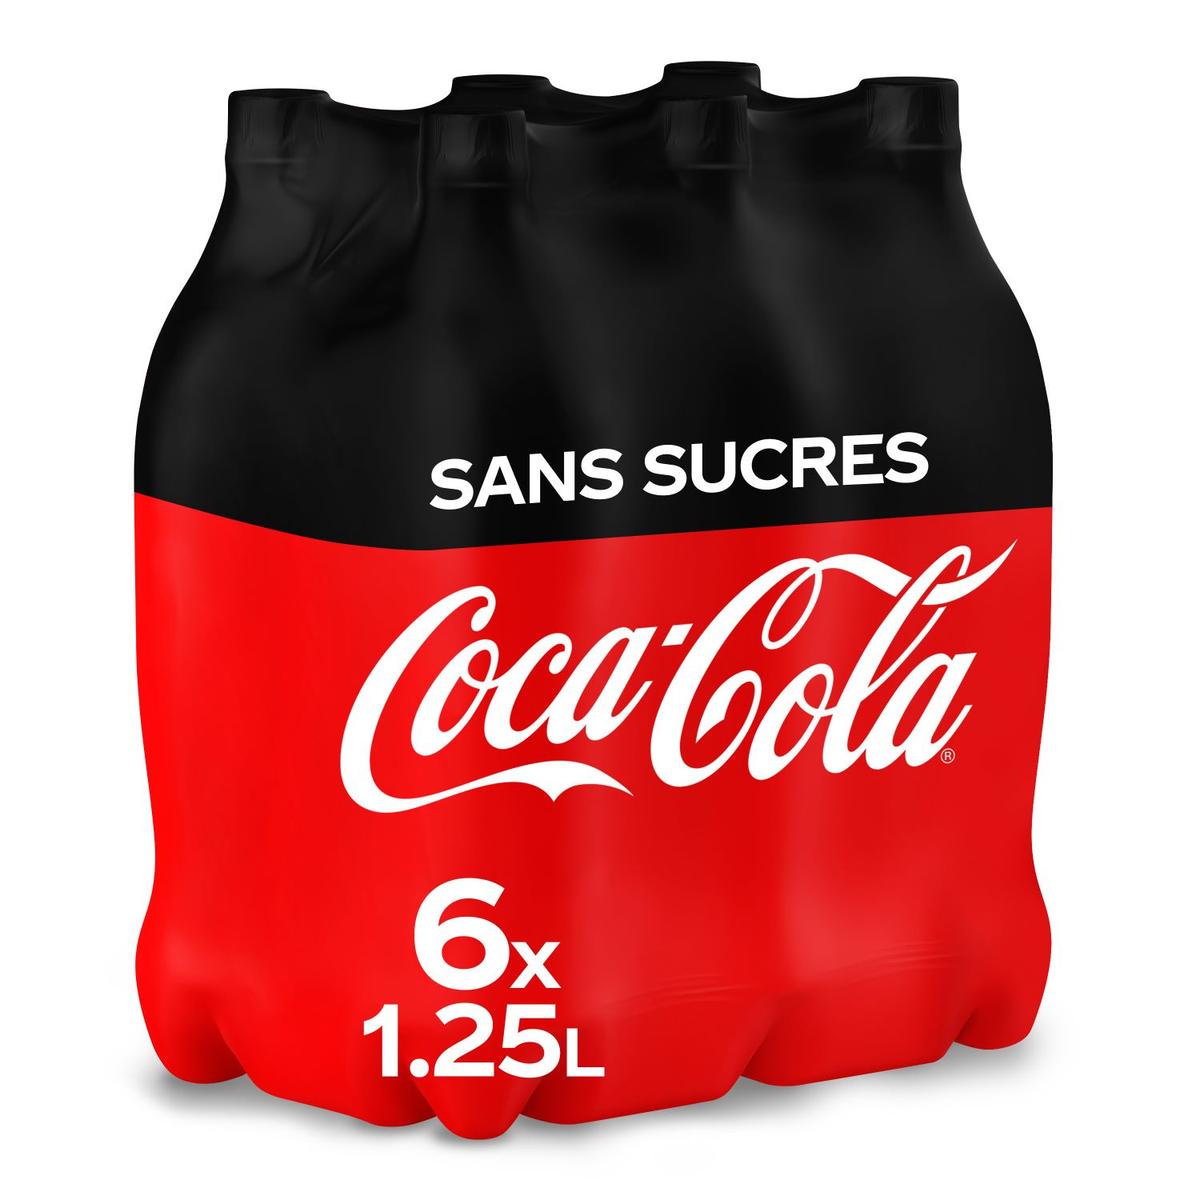 Coca Cola sans sucre - 1,5l